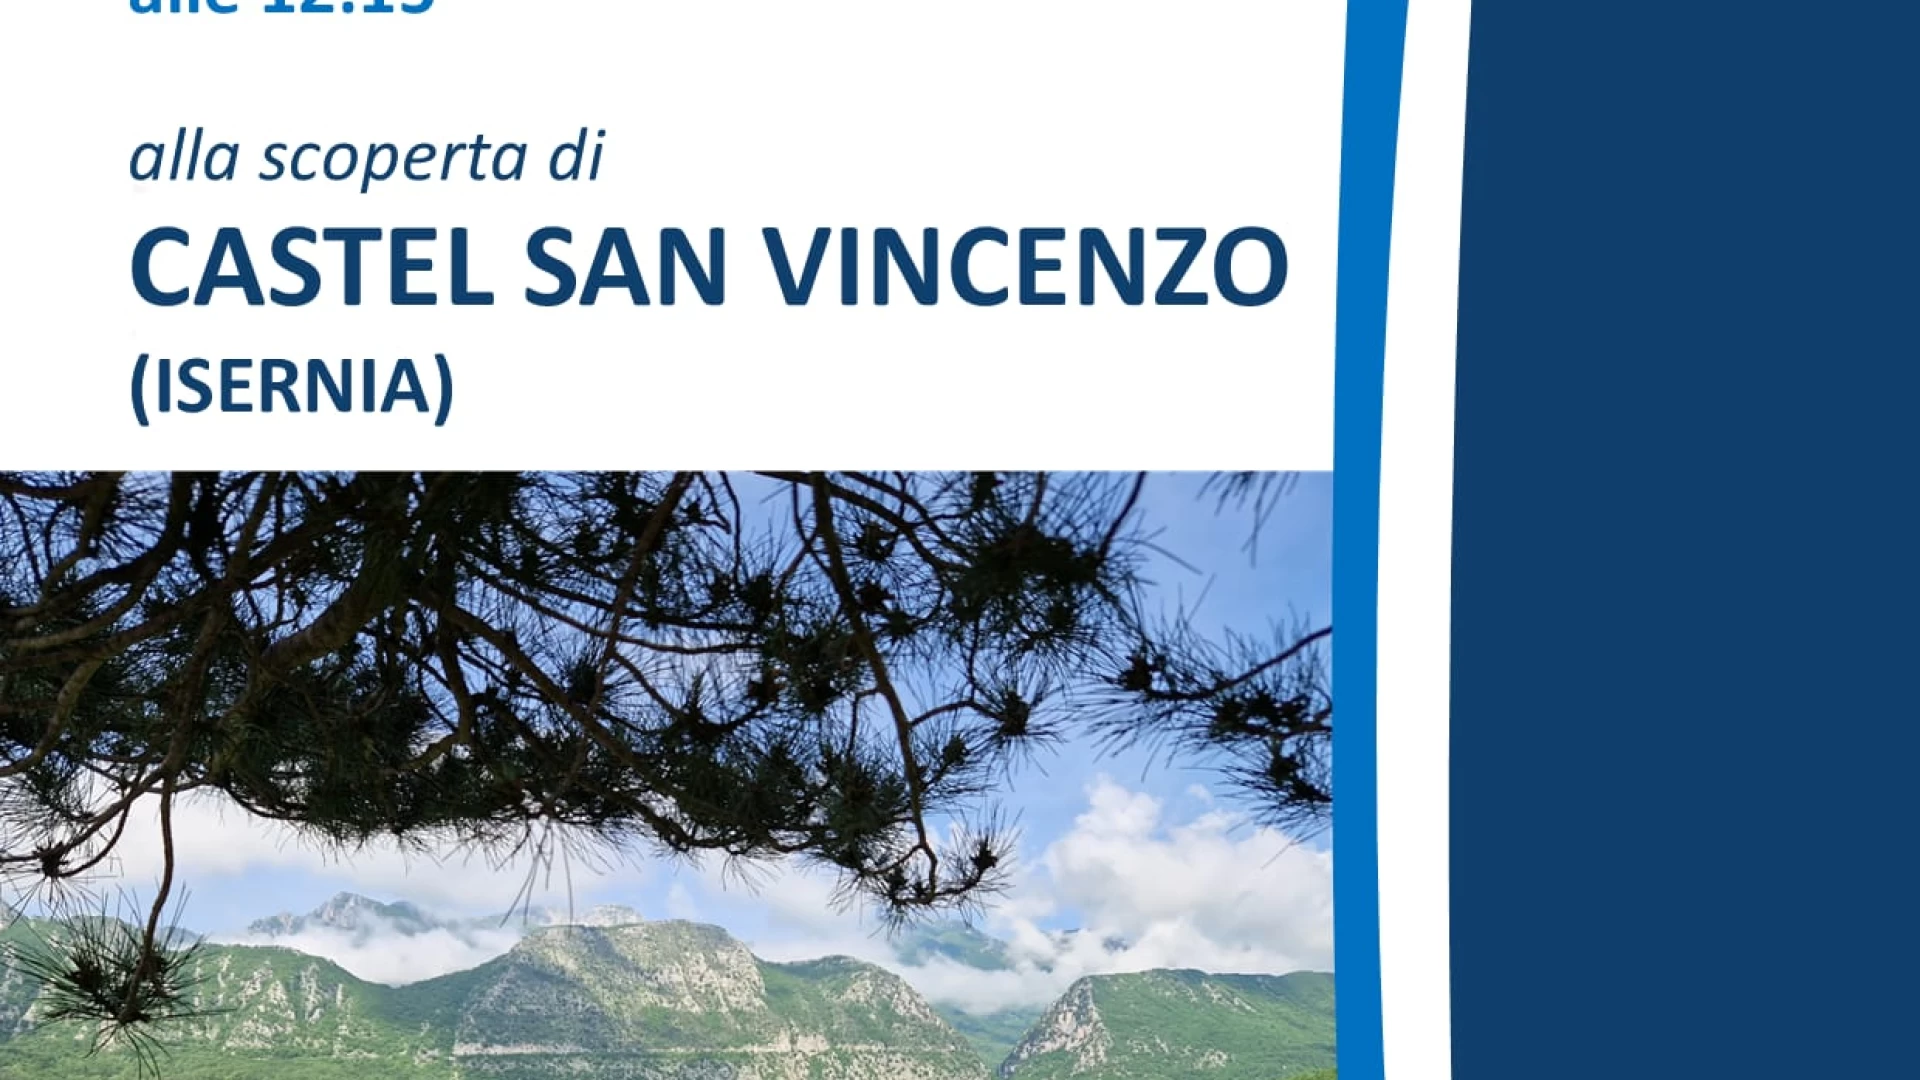 Borghi d’Italia dedica uno speciale a Castel San Vincenzo. Diretta sabato 24 e domenica 25 giugno.